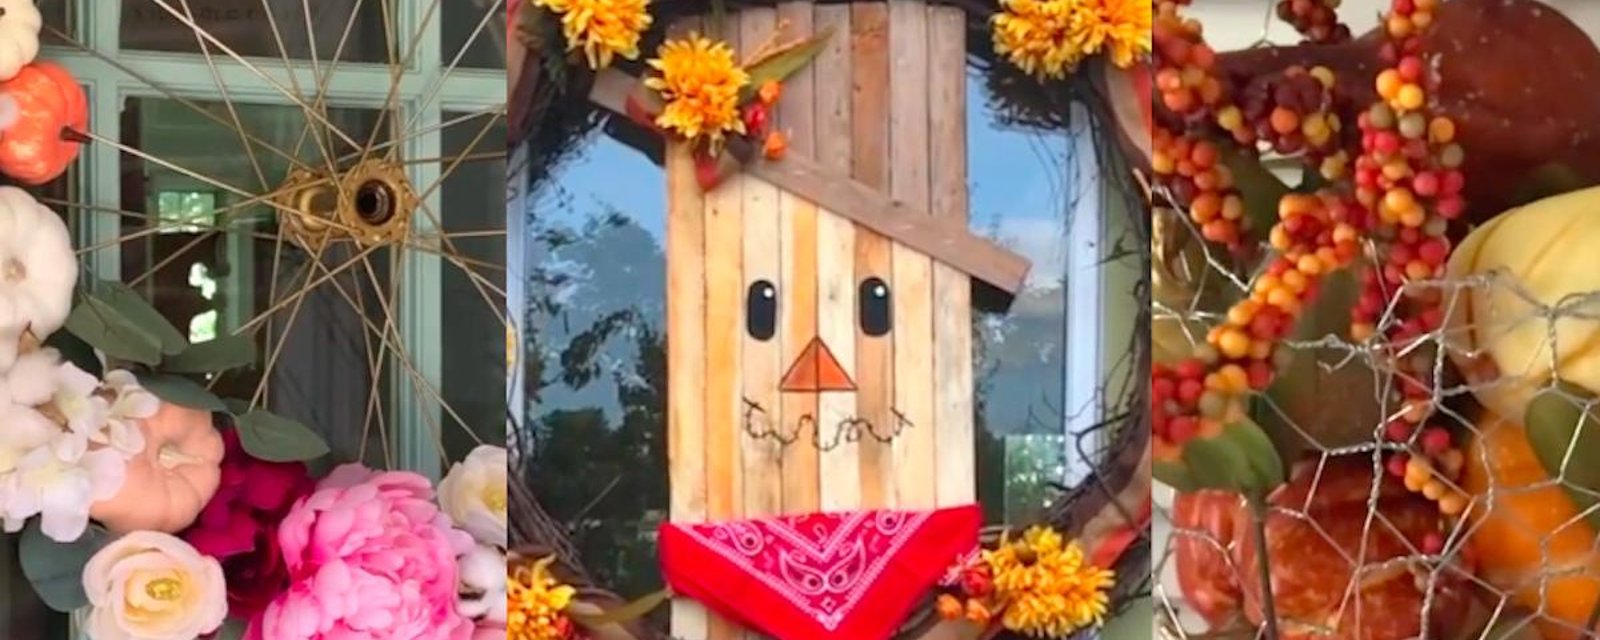 6 bricolages ingénieux pour décorer votre automne!